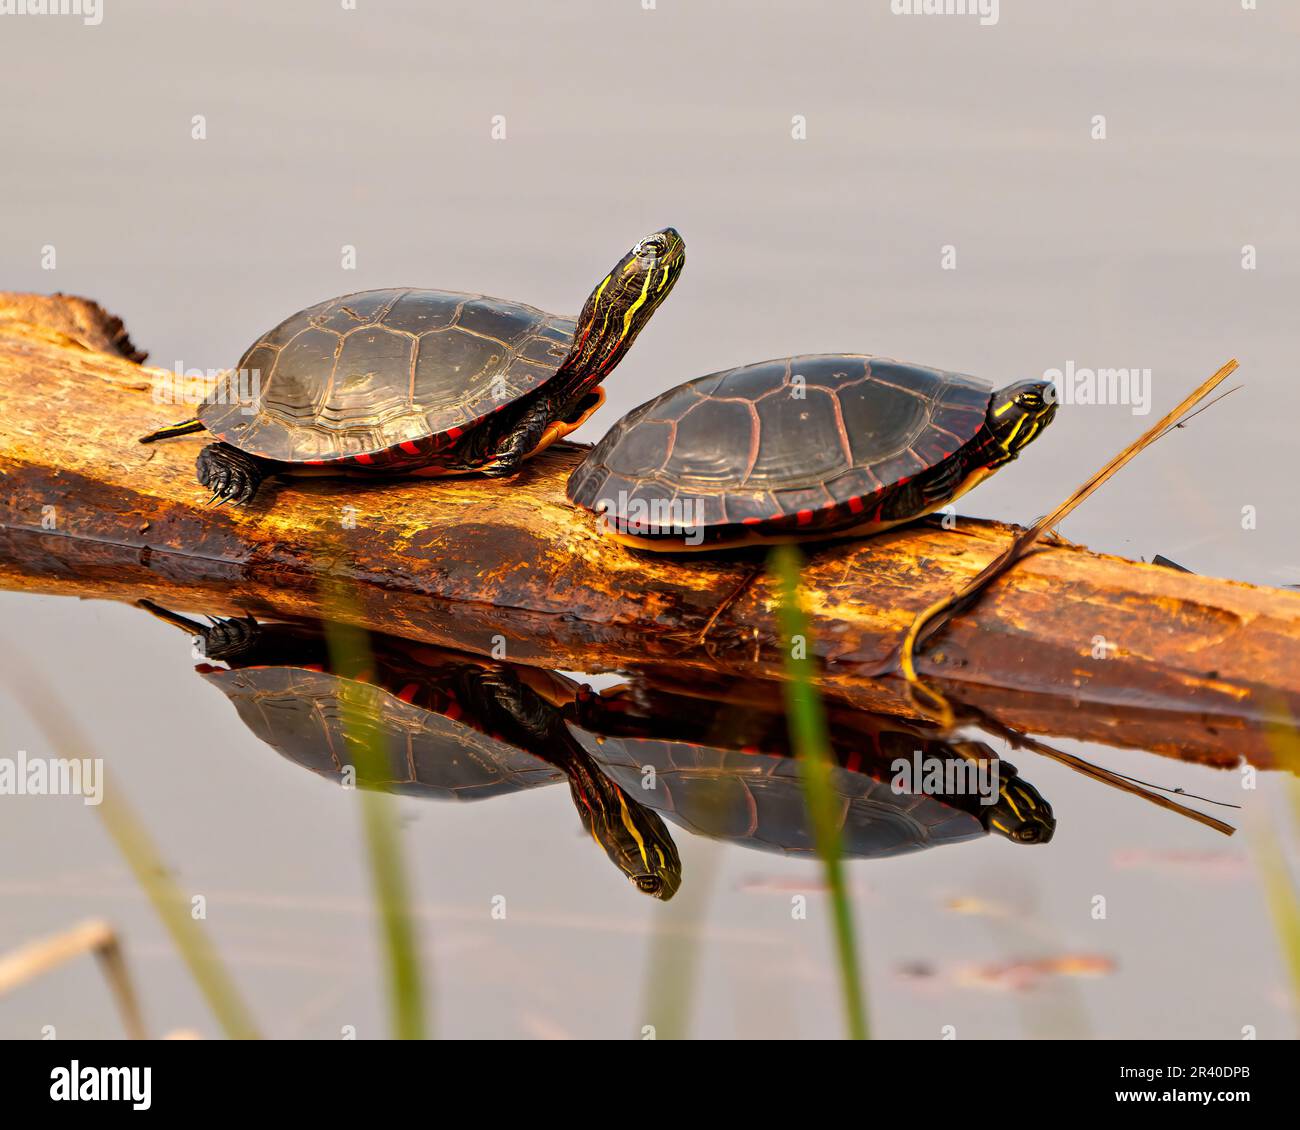 Tortugas pintadas descansando sobre un tronco en el estanque con un reflejo en el agua y disfrutando de su entorno y hábitat circundante. Foto de stock